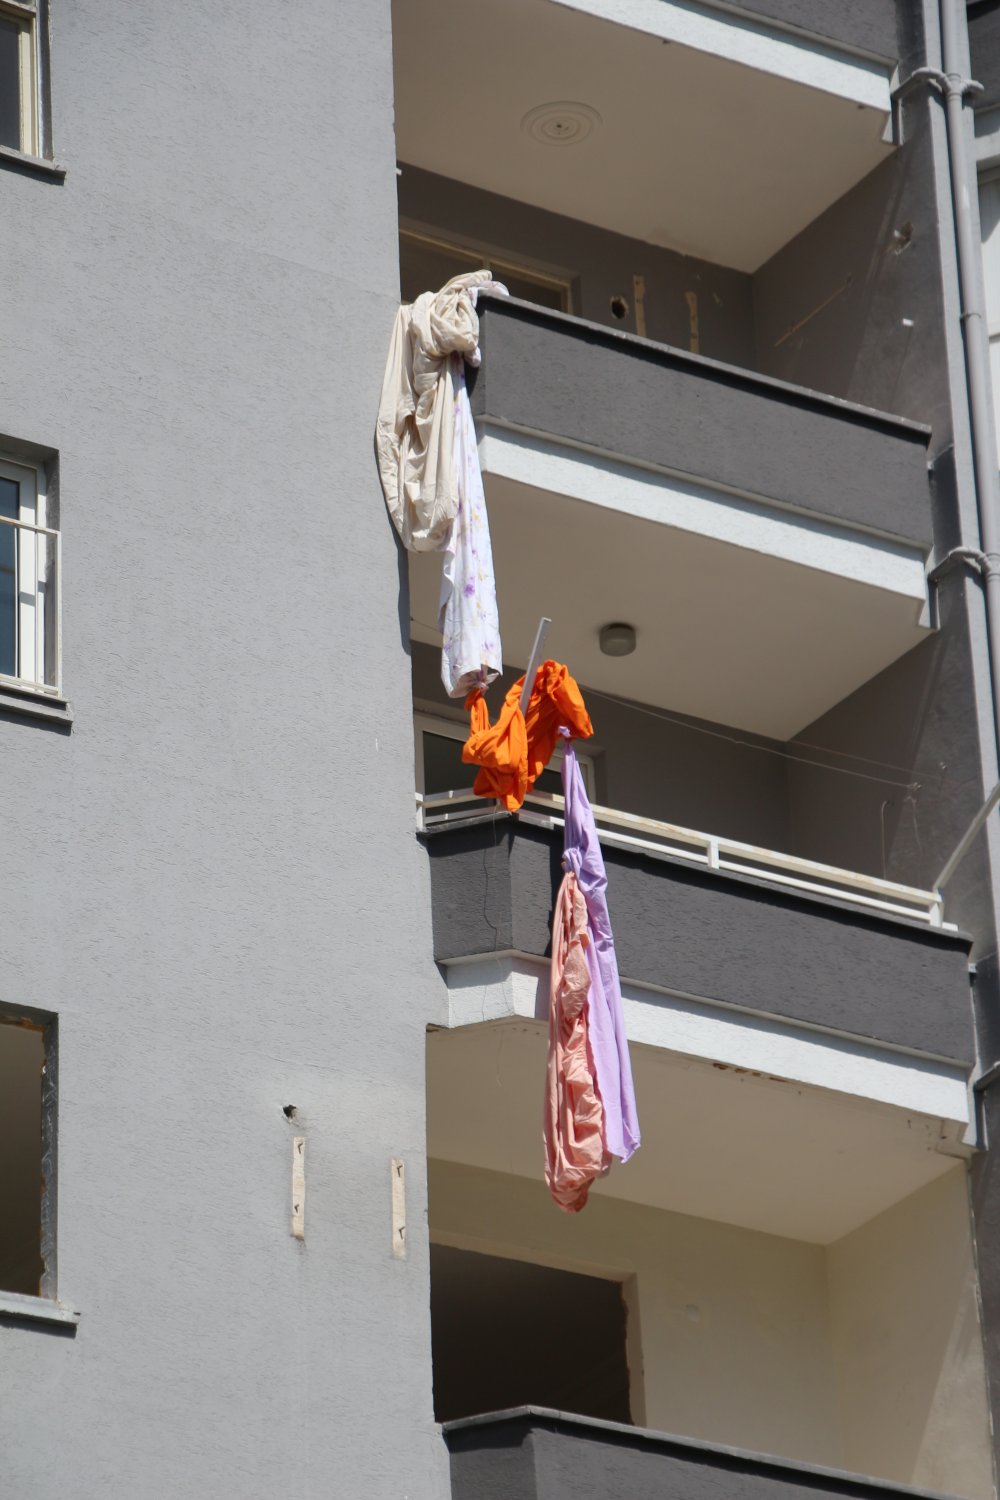 8'inci kattaki daireye giren hırsızlık şüphelisi, çarşaflarla balkondan inerken düşüp öldü